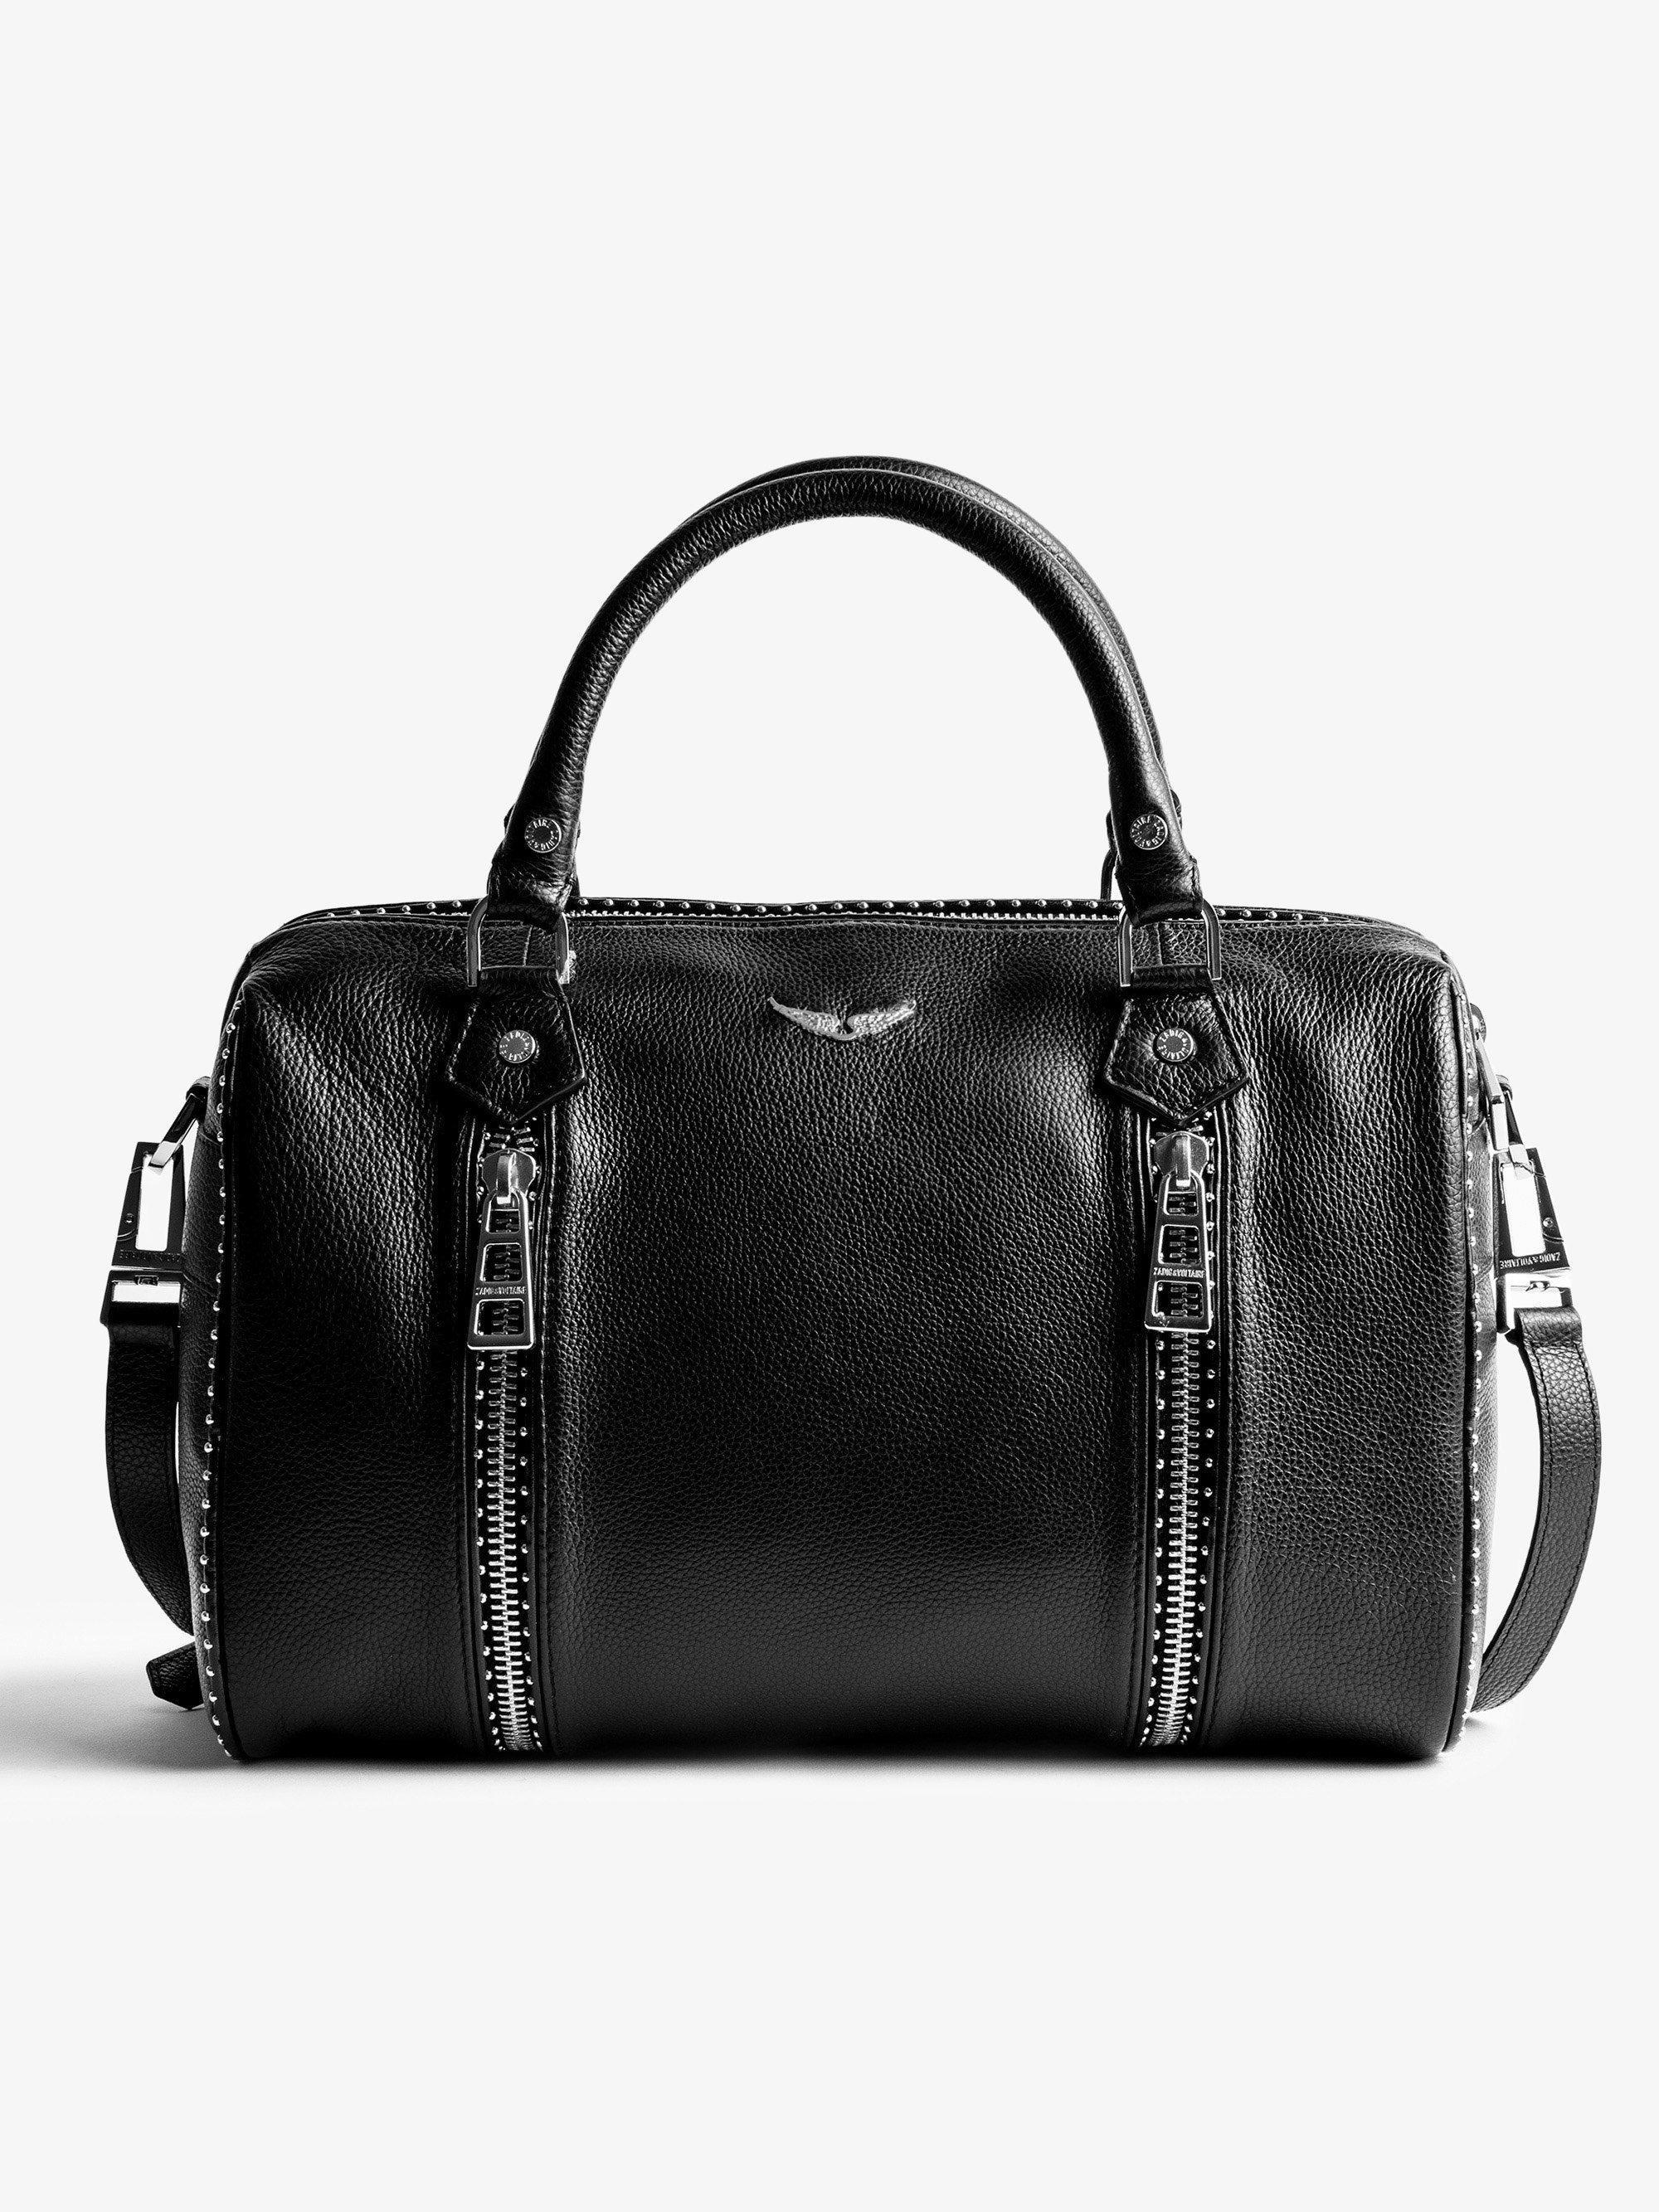 Tasche Sunny Medium Studs - Ikonische Damen-Handtasche Sunny Medium aus schwarzem, genarbtem Leder mit silberfarbenen Nieten.